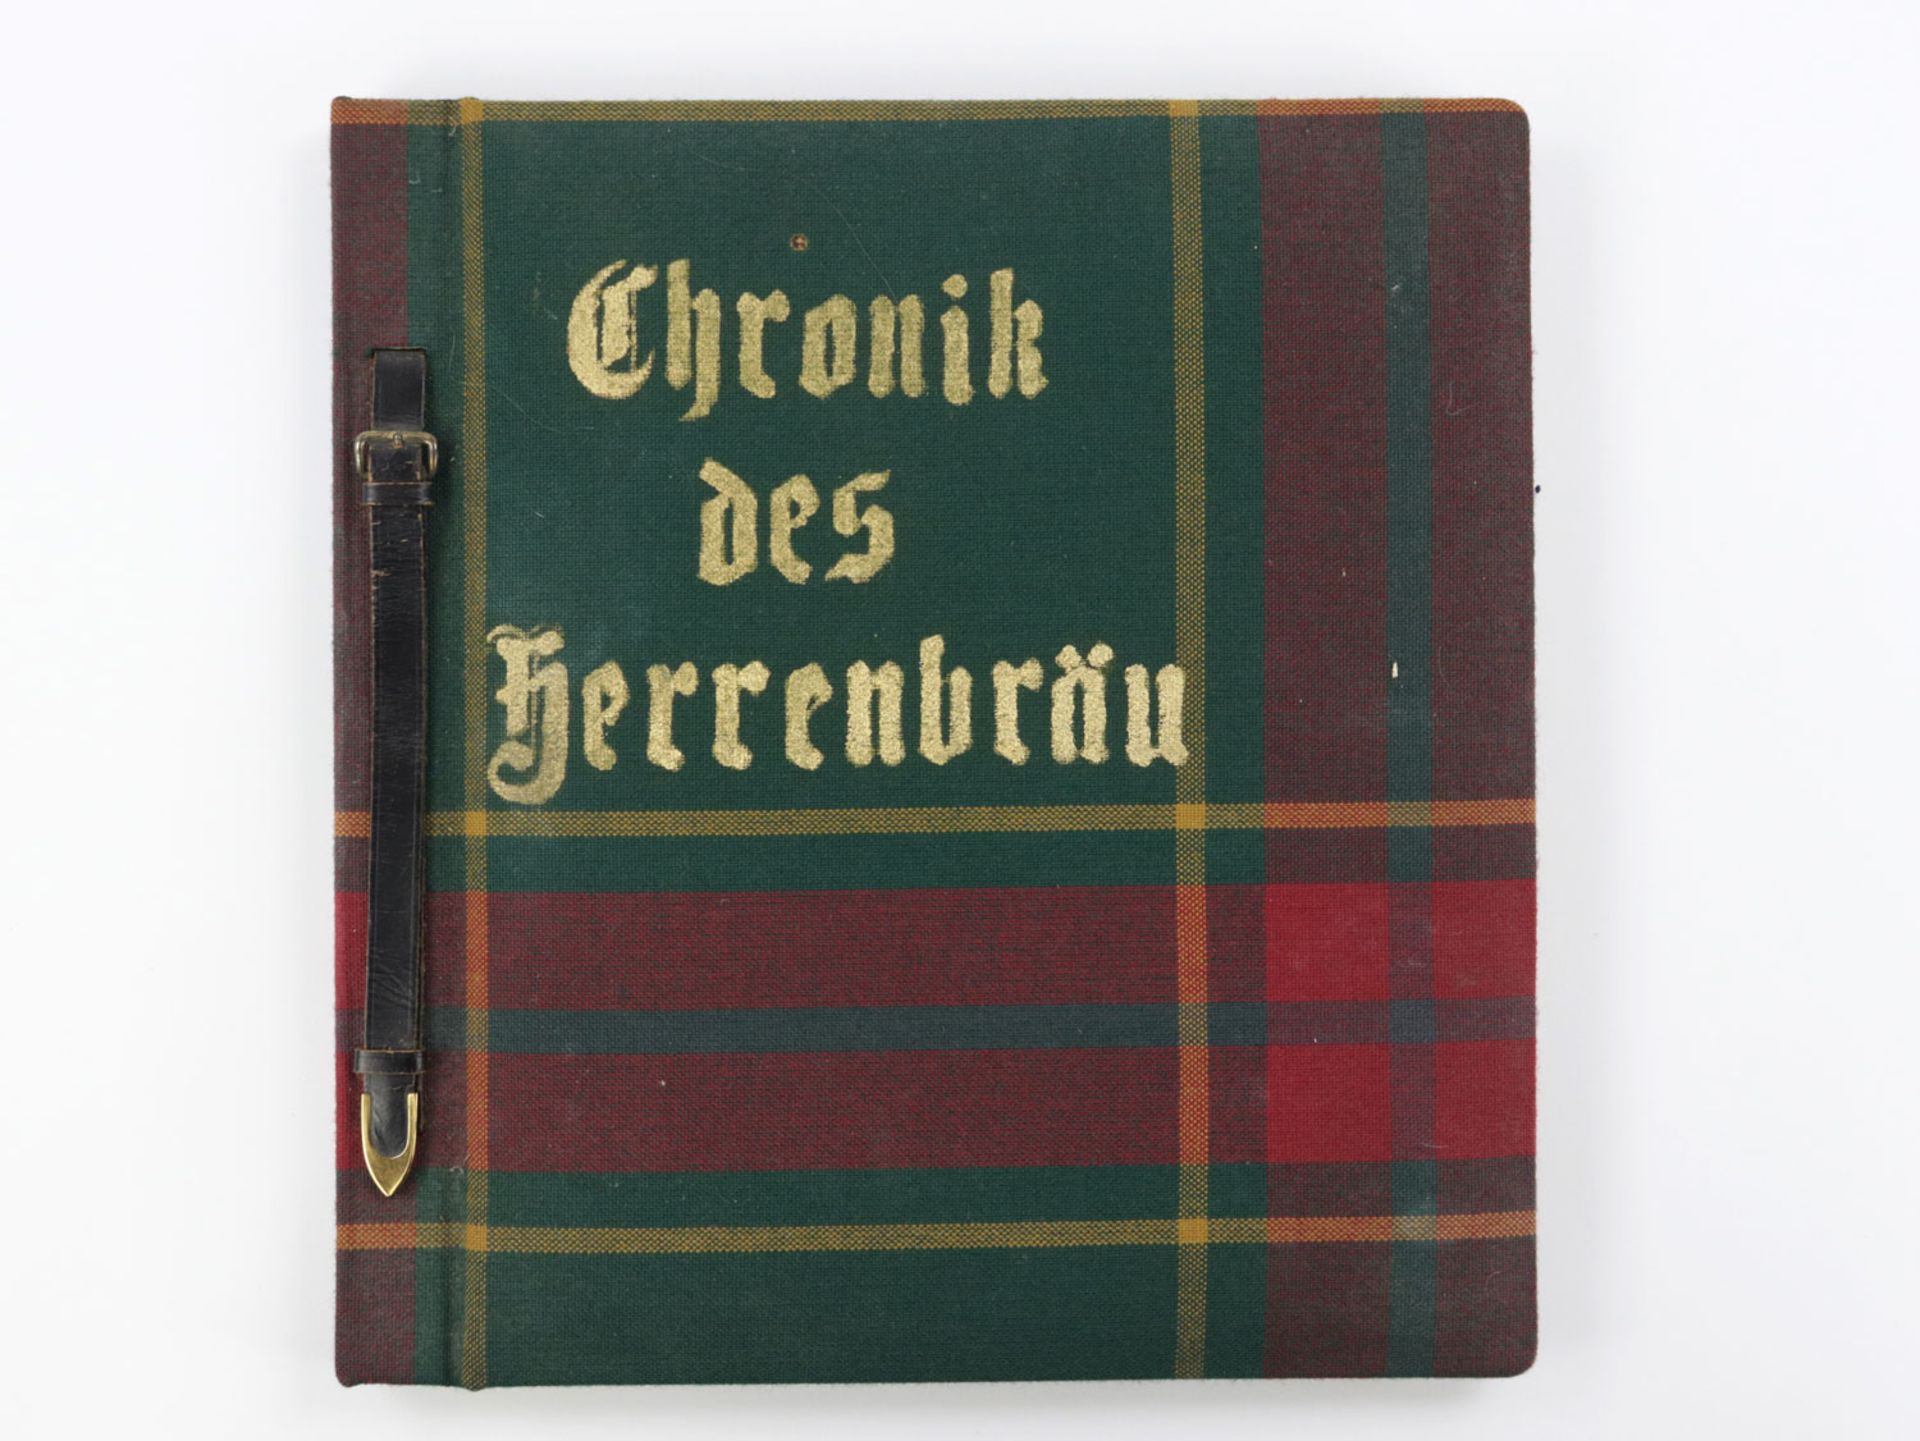 Chronik Herrenbräu - 1967